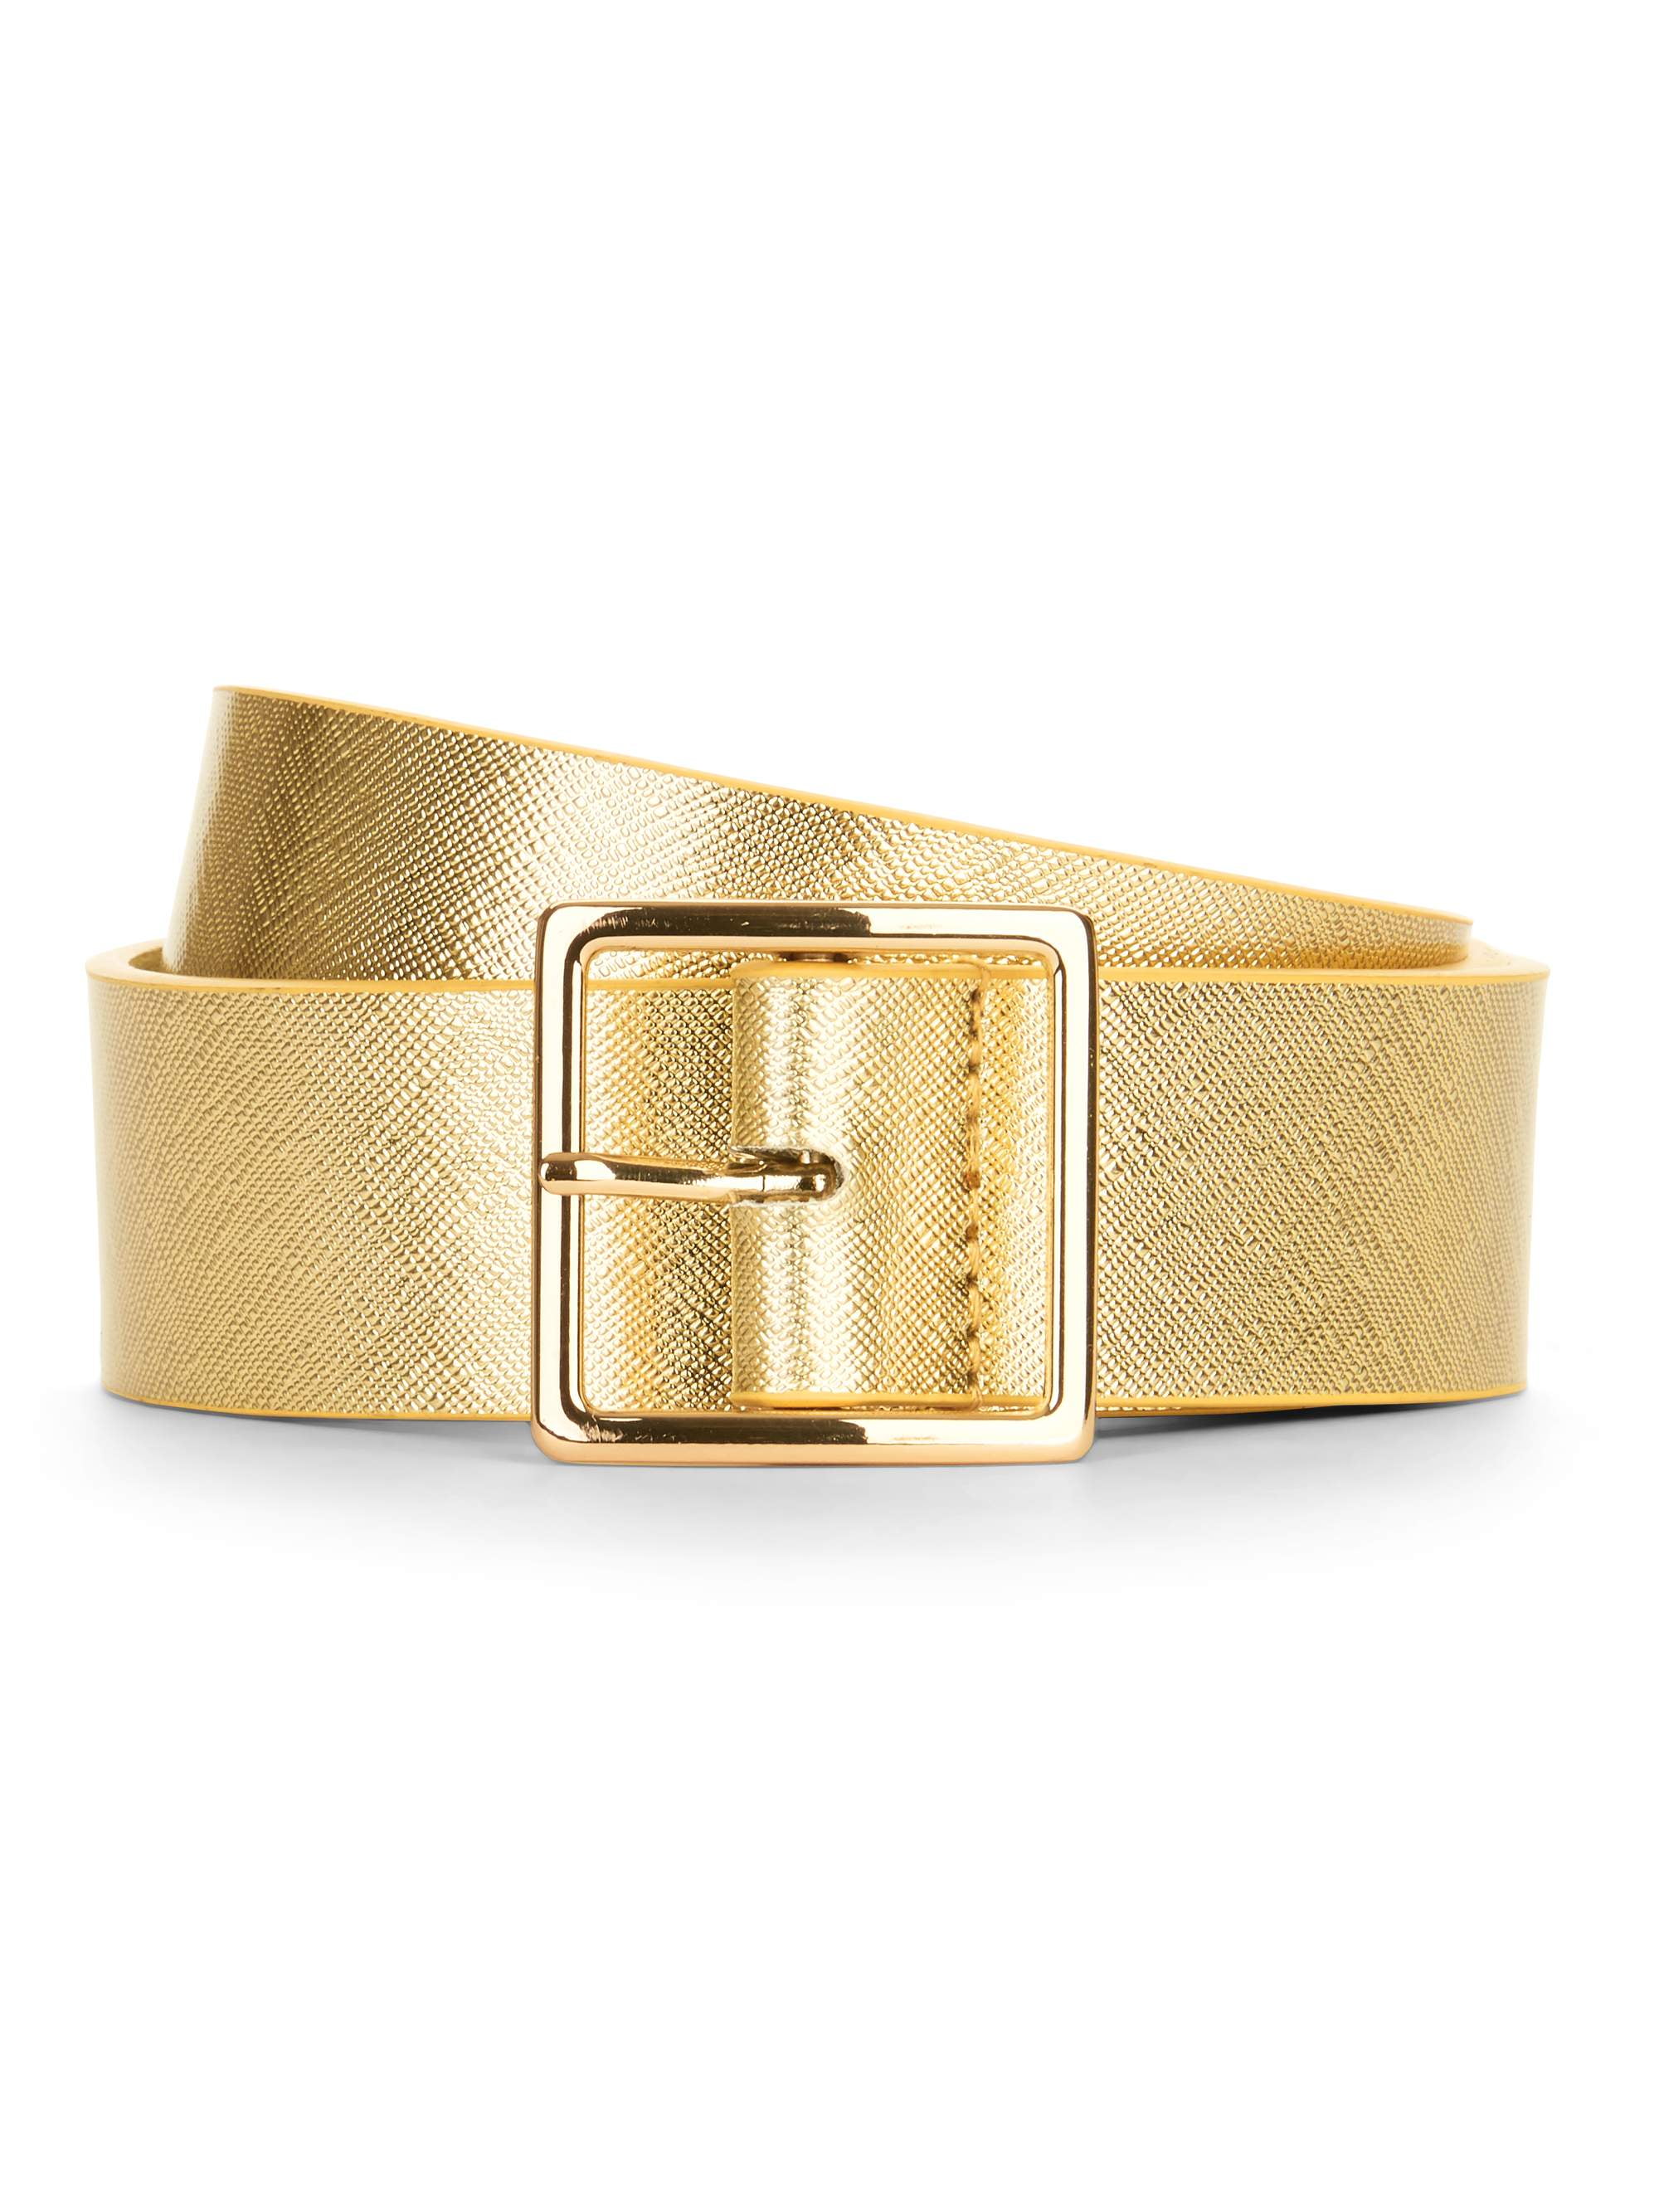 Time & Tru Women's Gold Metallic Belt - Walmart.com